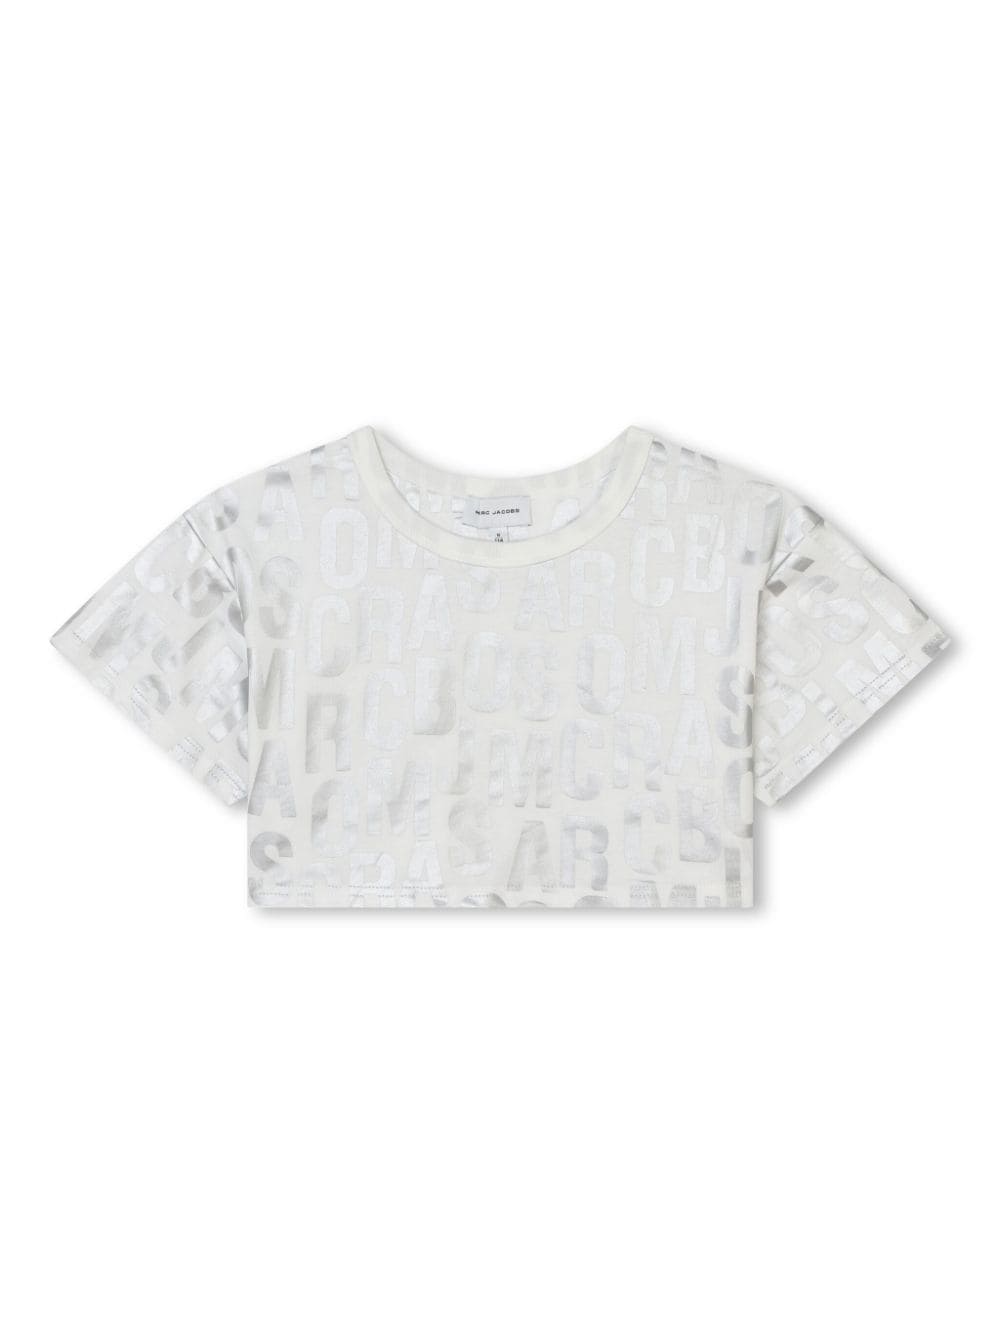 t-shirt blanc/argent pour les filles